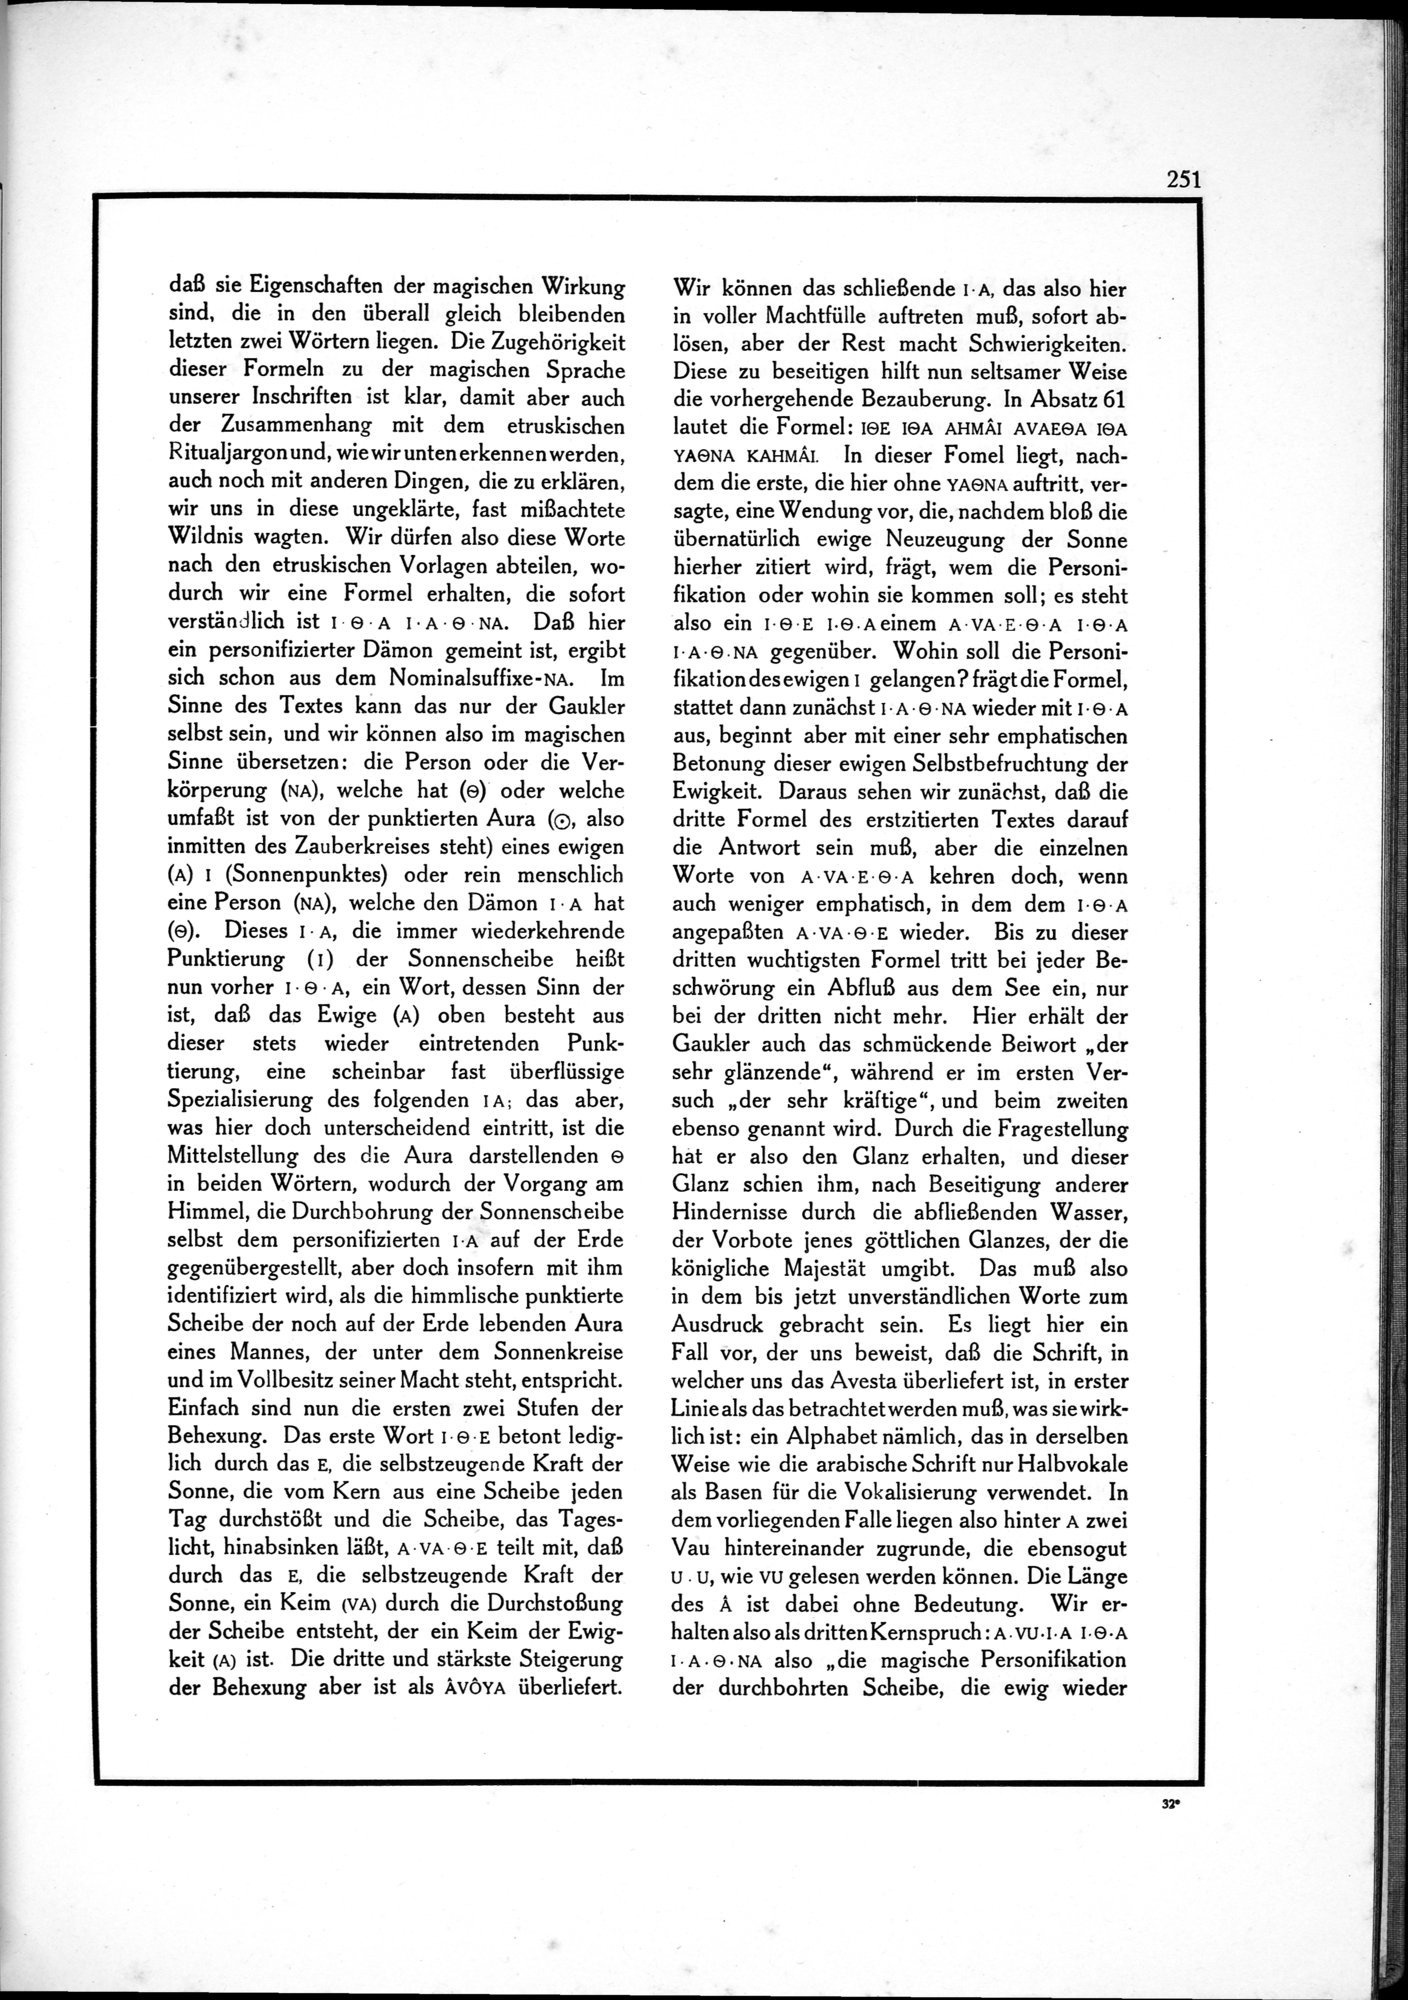 Die Teufel des Avesta und Ihre Beziehungen zur Ikonographie des Buddhismus Zentral-Asiens : vol.1 / Page 255 (Grayscale High Resolution Image)